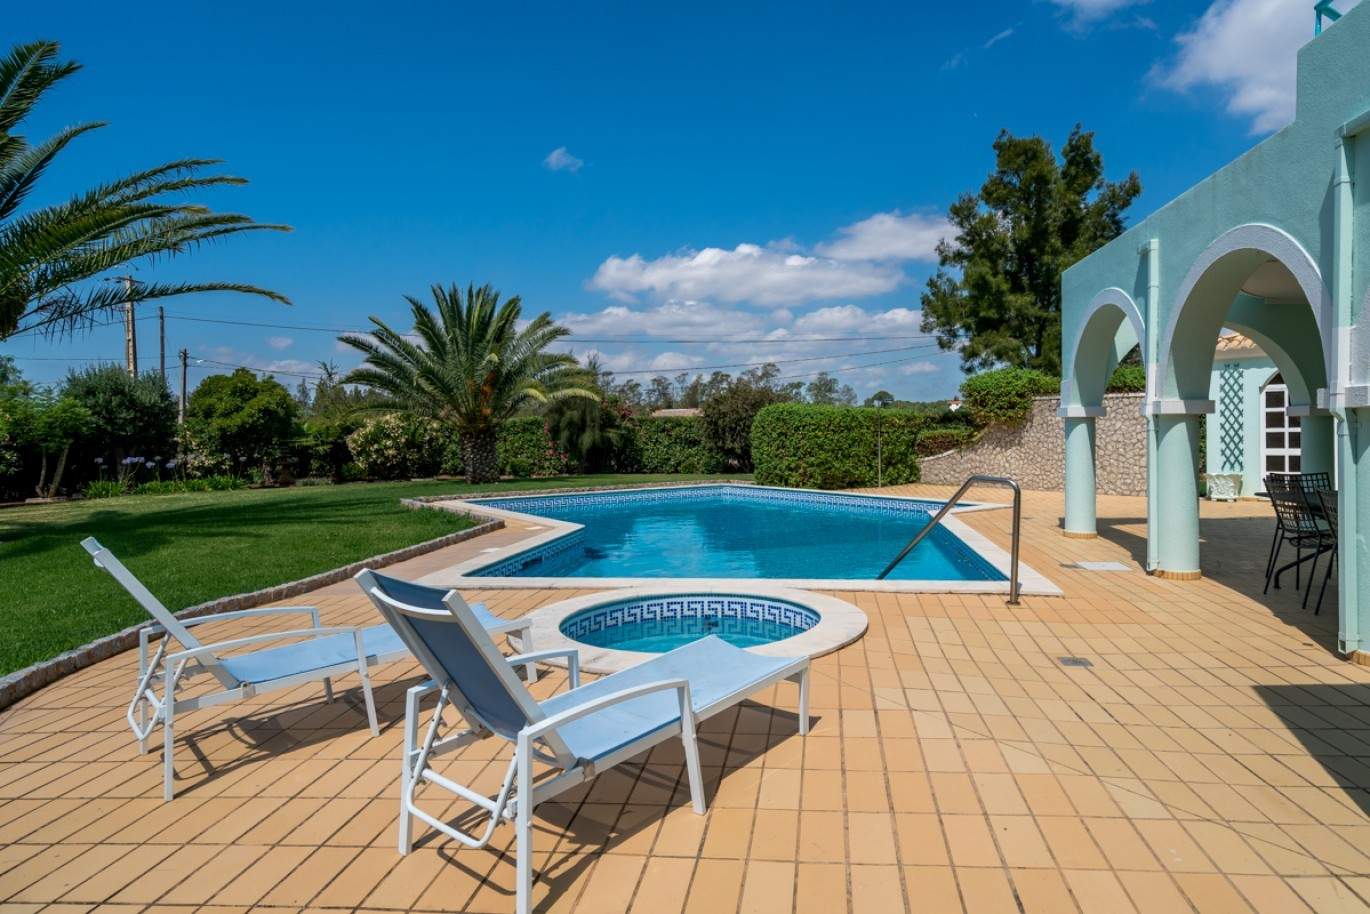 Verkauf Villa mit pool und Garten in Penina Alvor, Algarve, Portugal_83414